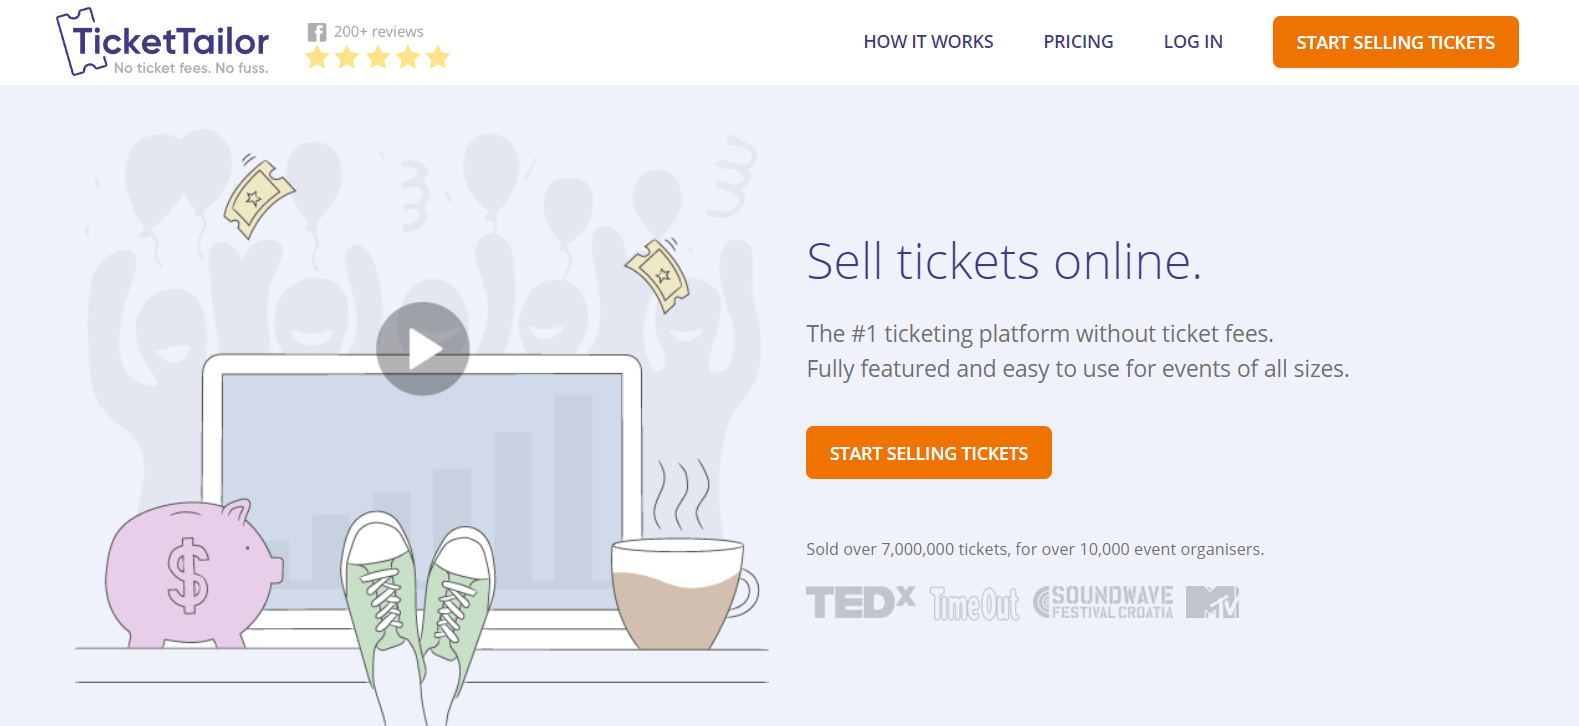 The TicketTailor website.